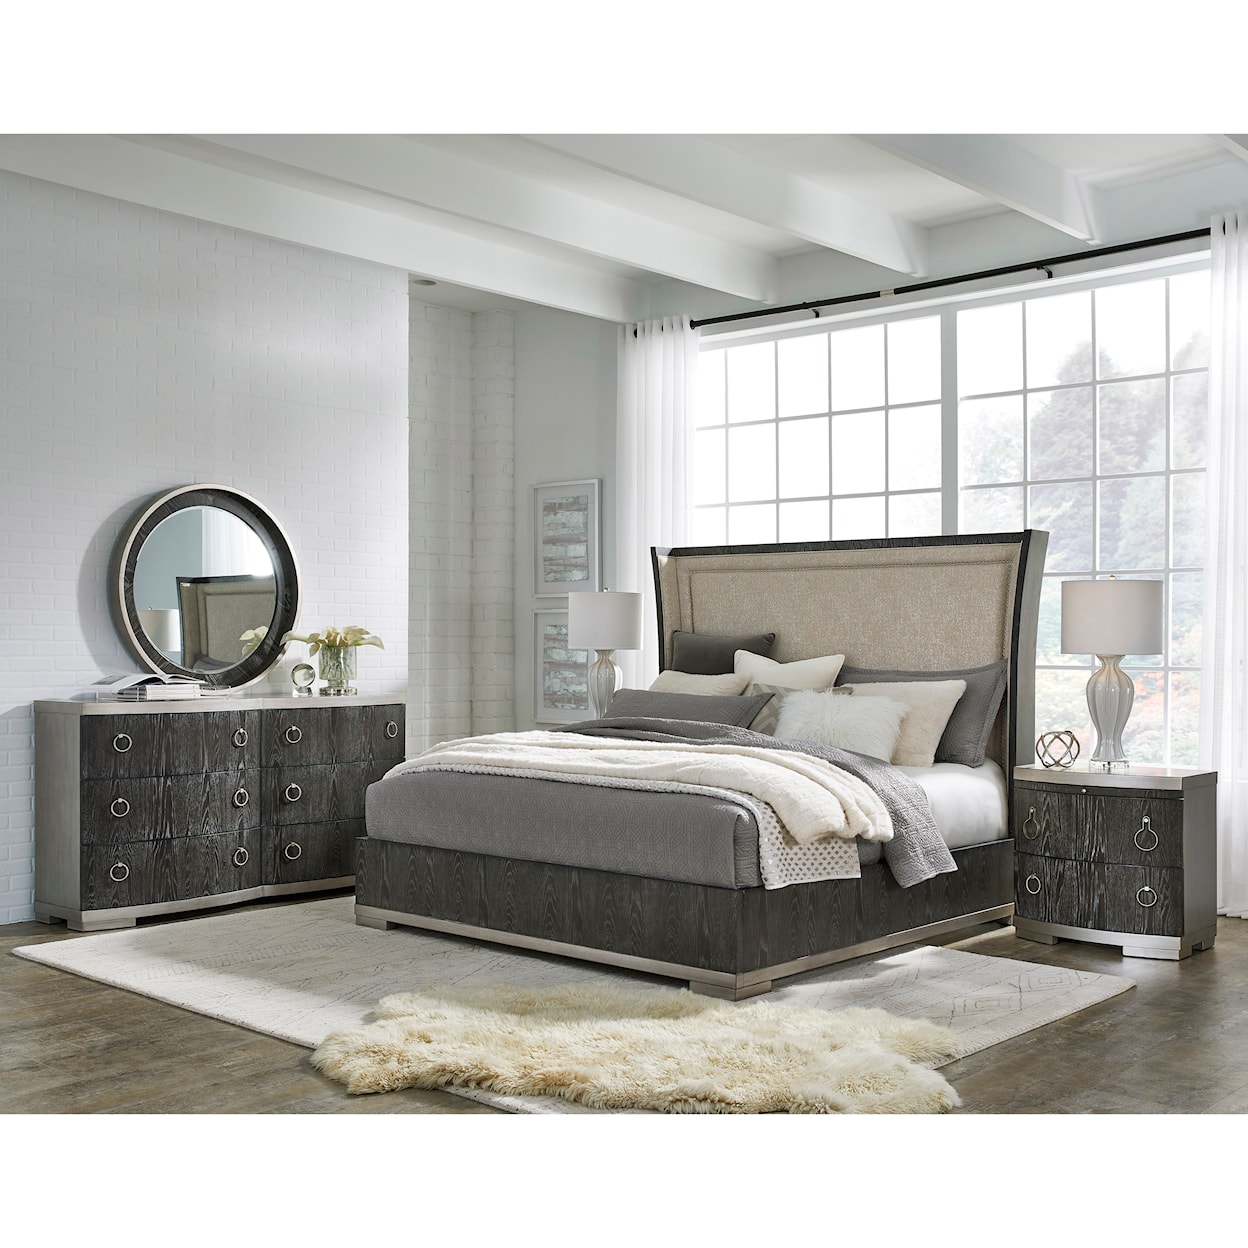 Pulaski Furniture Eve Upholstered Bed